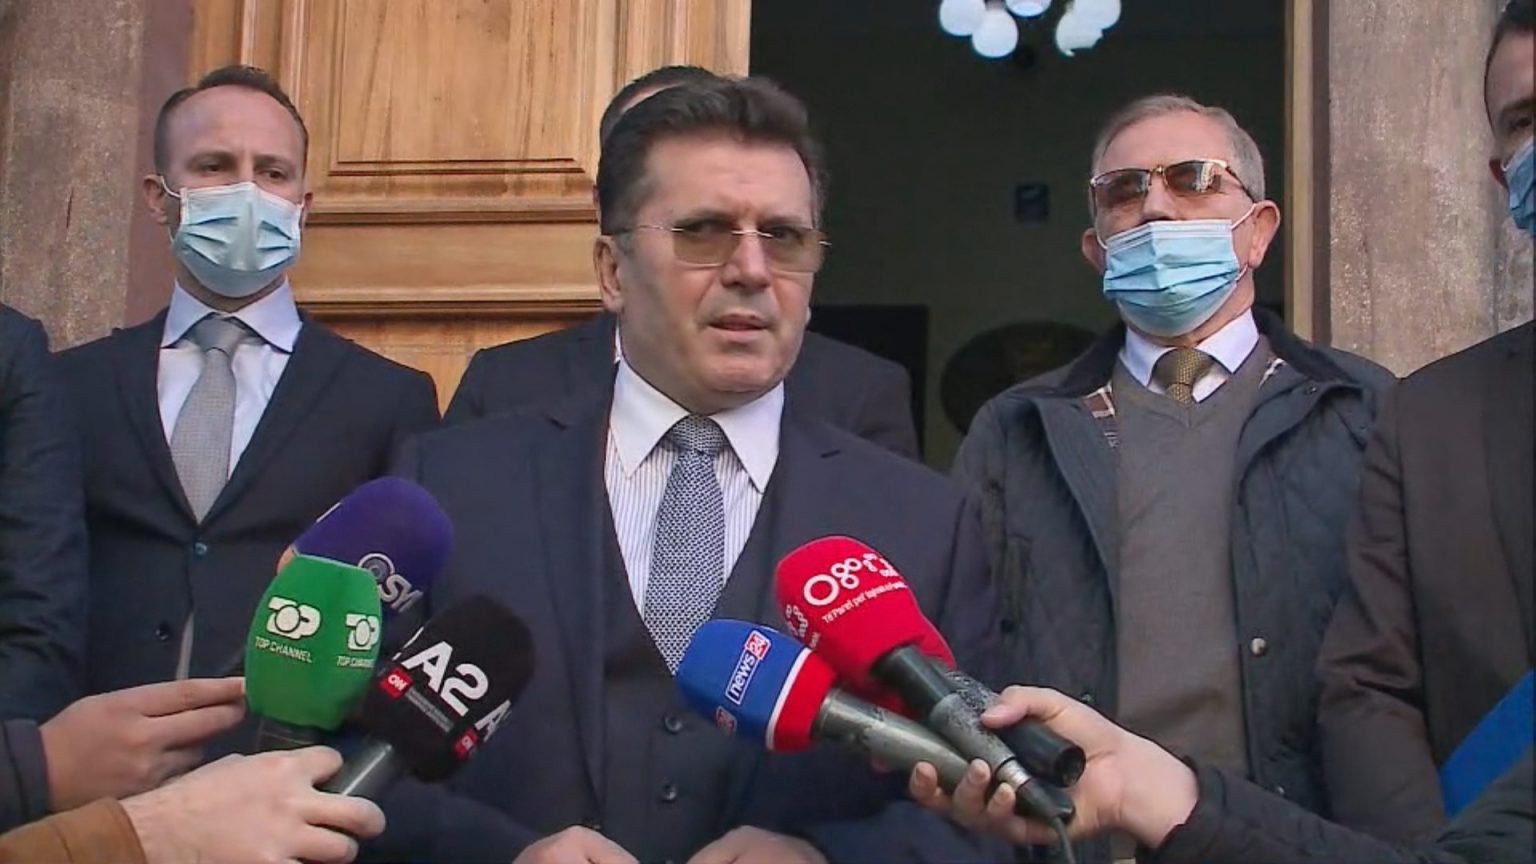 Vendimi i GJKKO-së për ish-ministrin Fatmir Mediu: Heqja e imunitetit i hap rrugë procesit